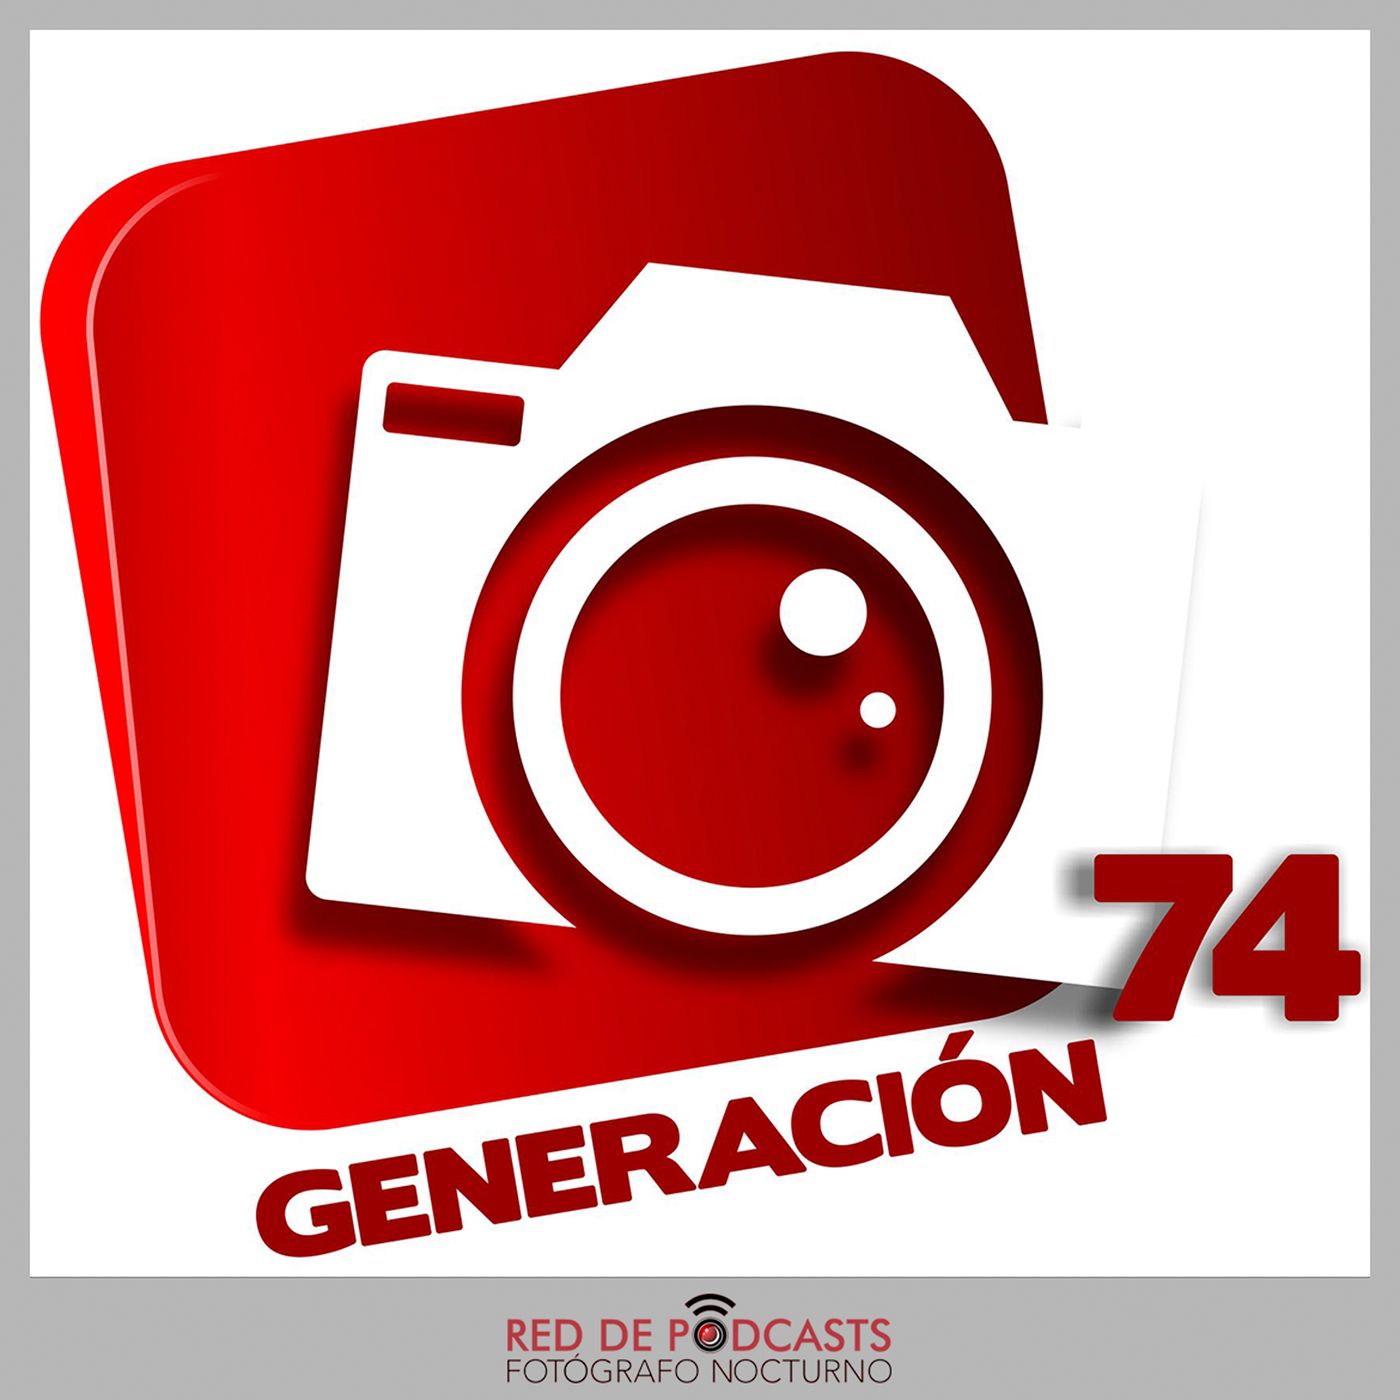 Generación 74